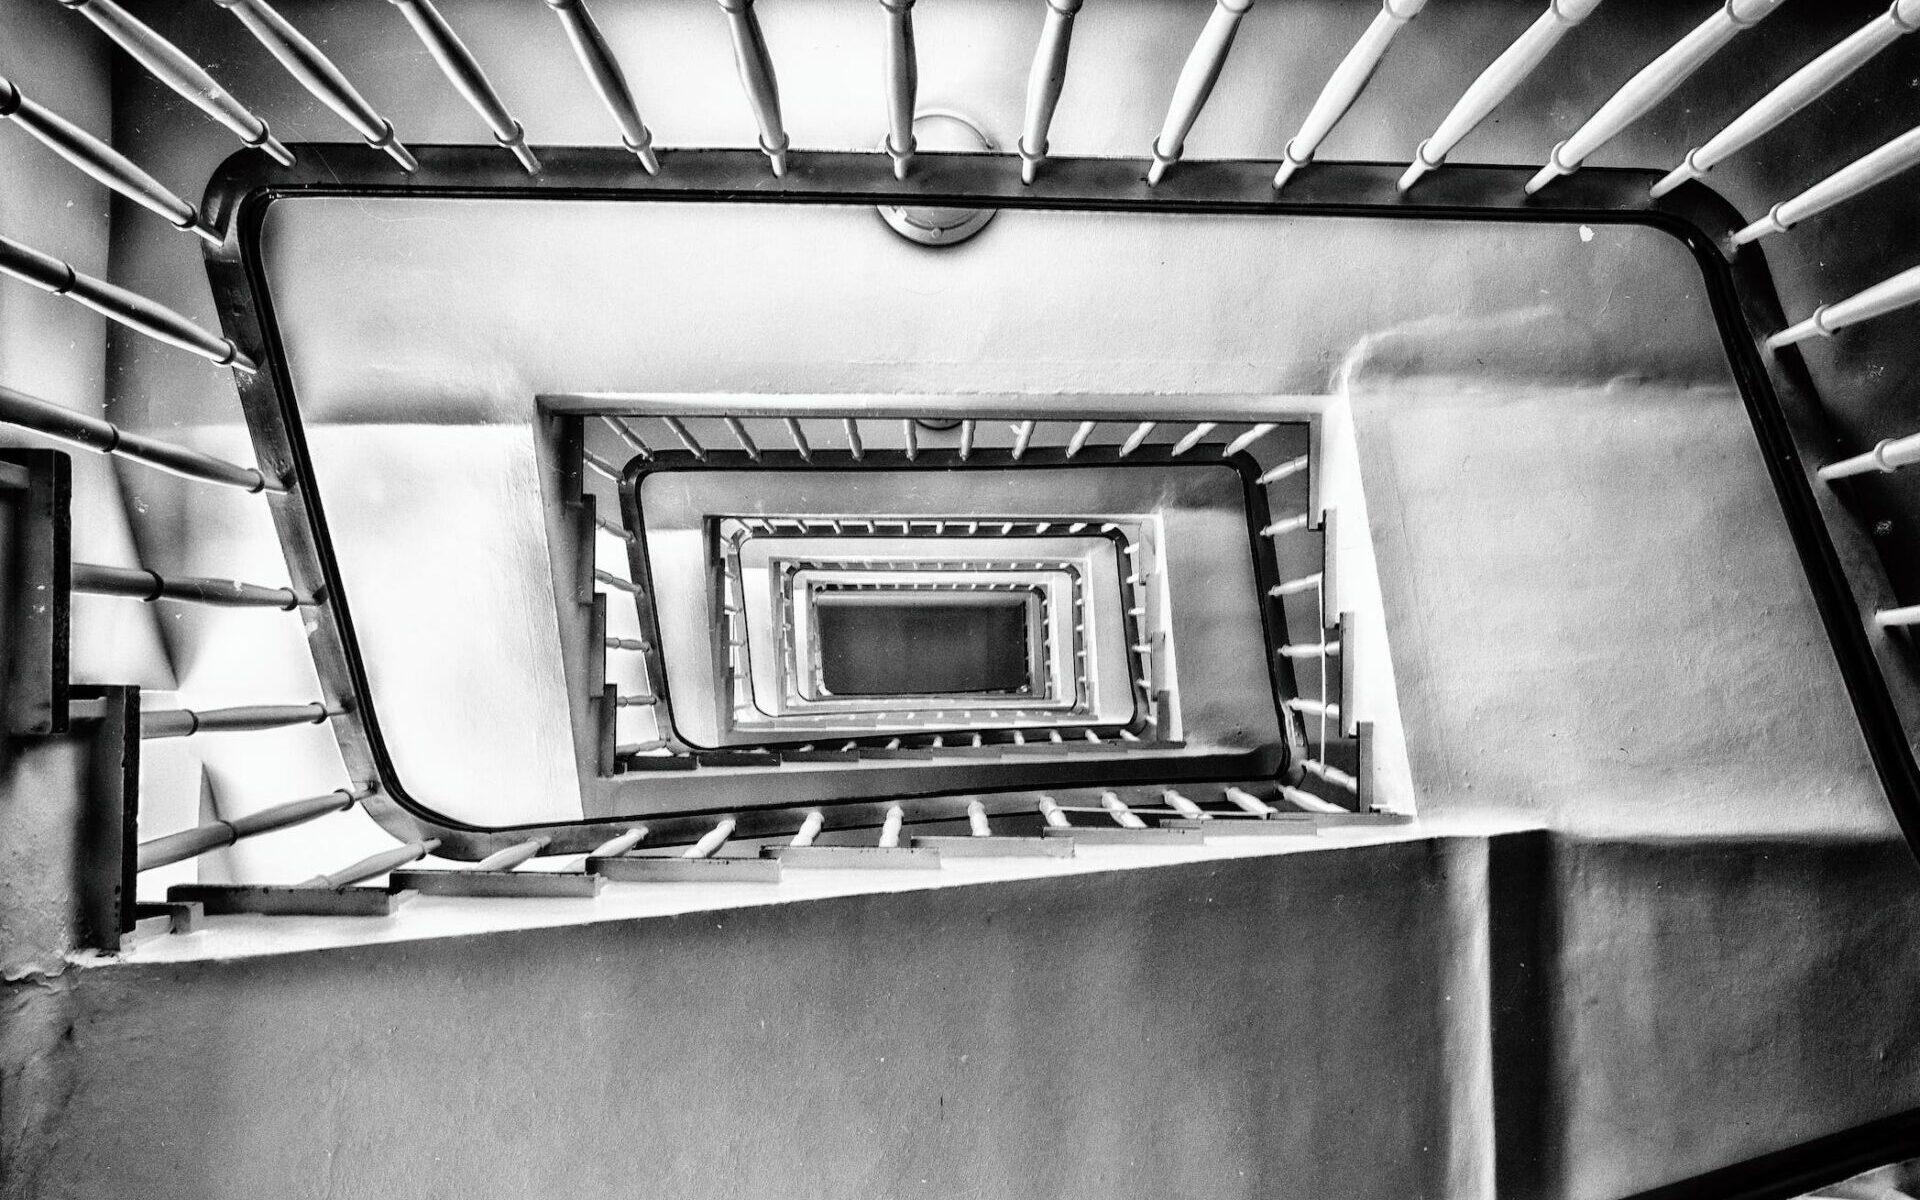 Wałbrzych: Sprawcy pobicia na klatce schodowej zatrzymani /fot. pexels [zdjęcie poglądowe]